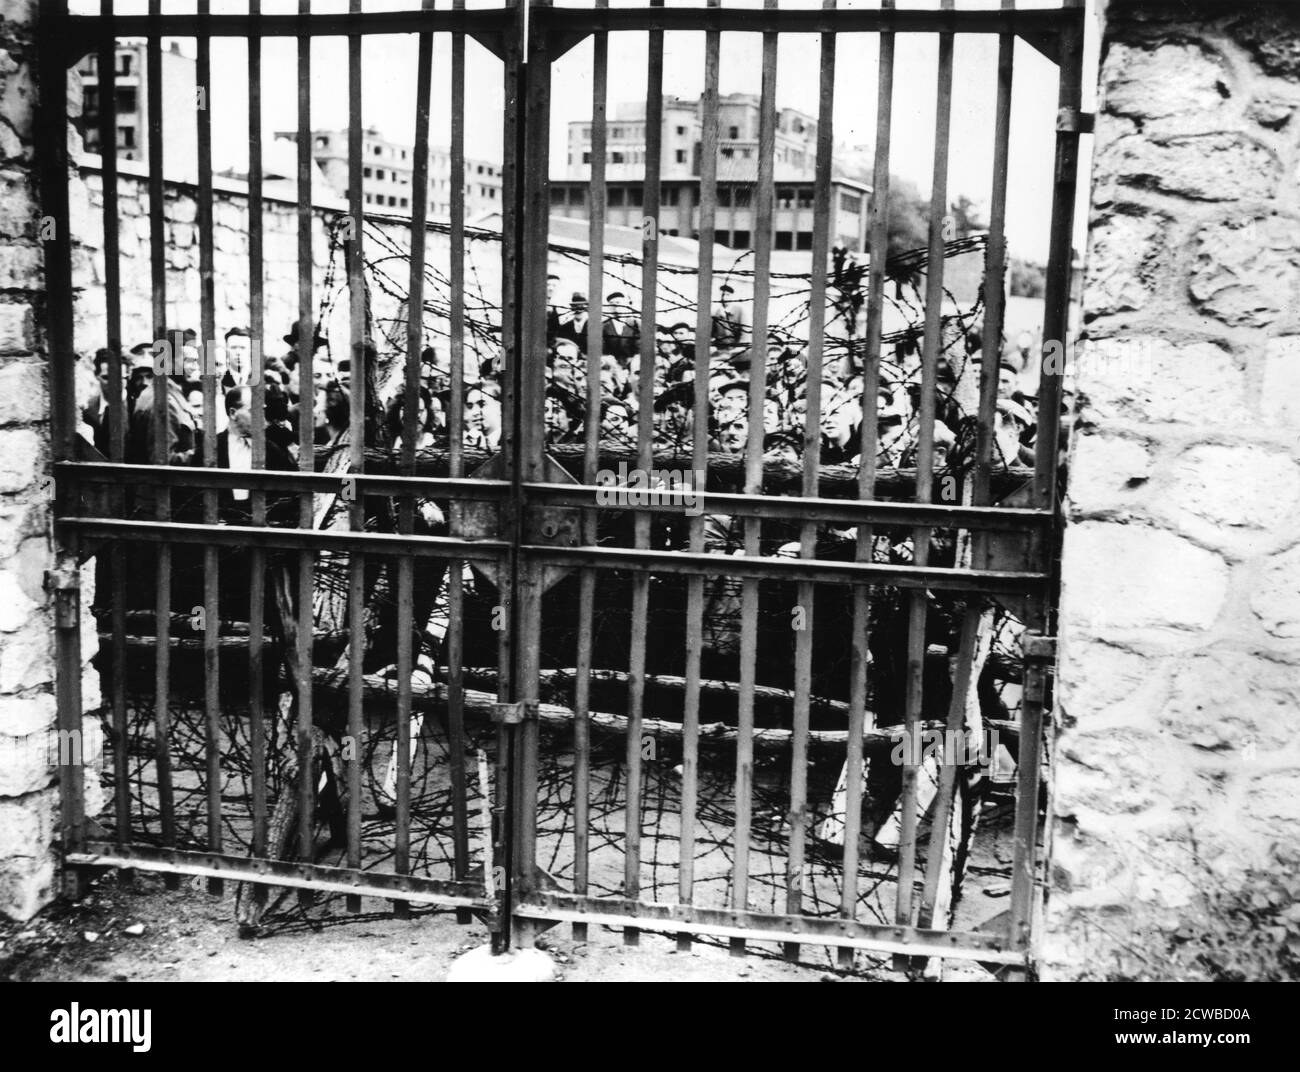 Familien warten auf die Nachricht ihrer Angehörigen, Air Ministry, Paris 1944. Die Leute warten hinter verschlossenen Toren auf die Ergebnisse der Tests, um die im Keller des Gebäudes gefundenen Leichen zu identifizieren. Der Fotograf ist unbekannt. Stockfoto